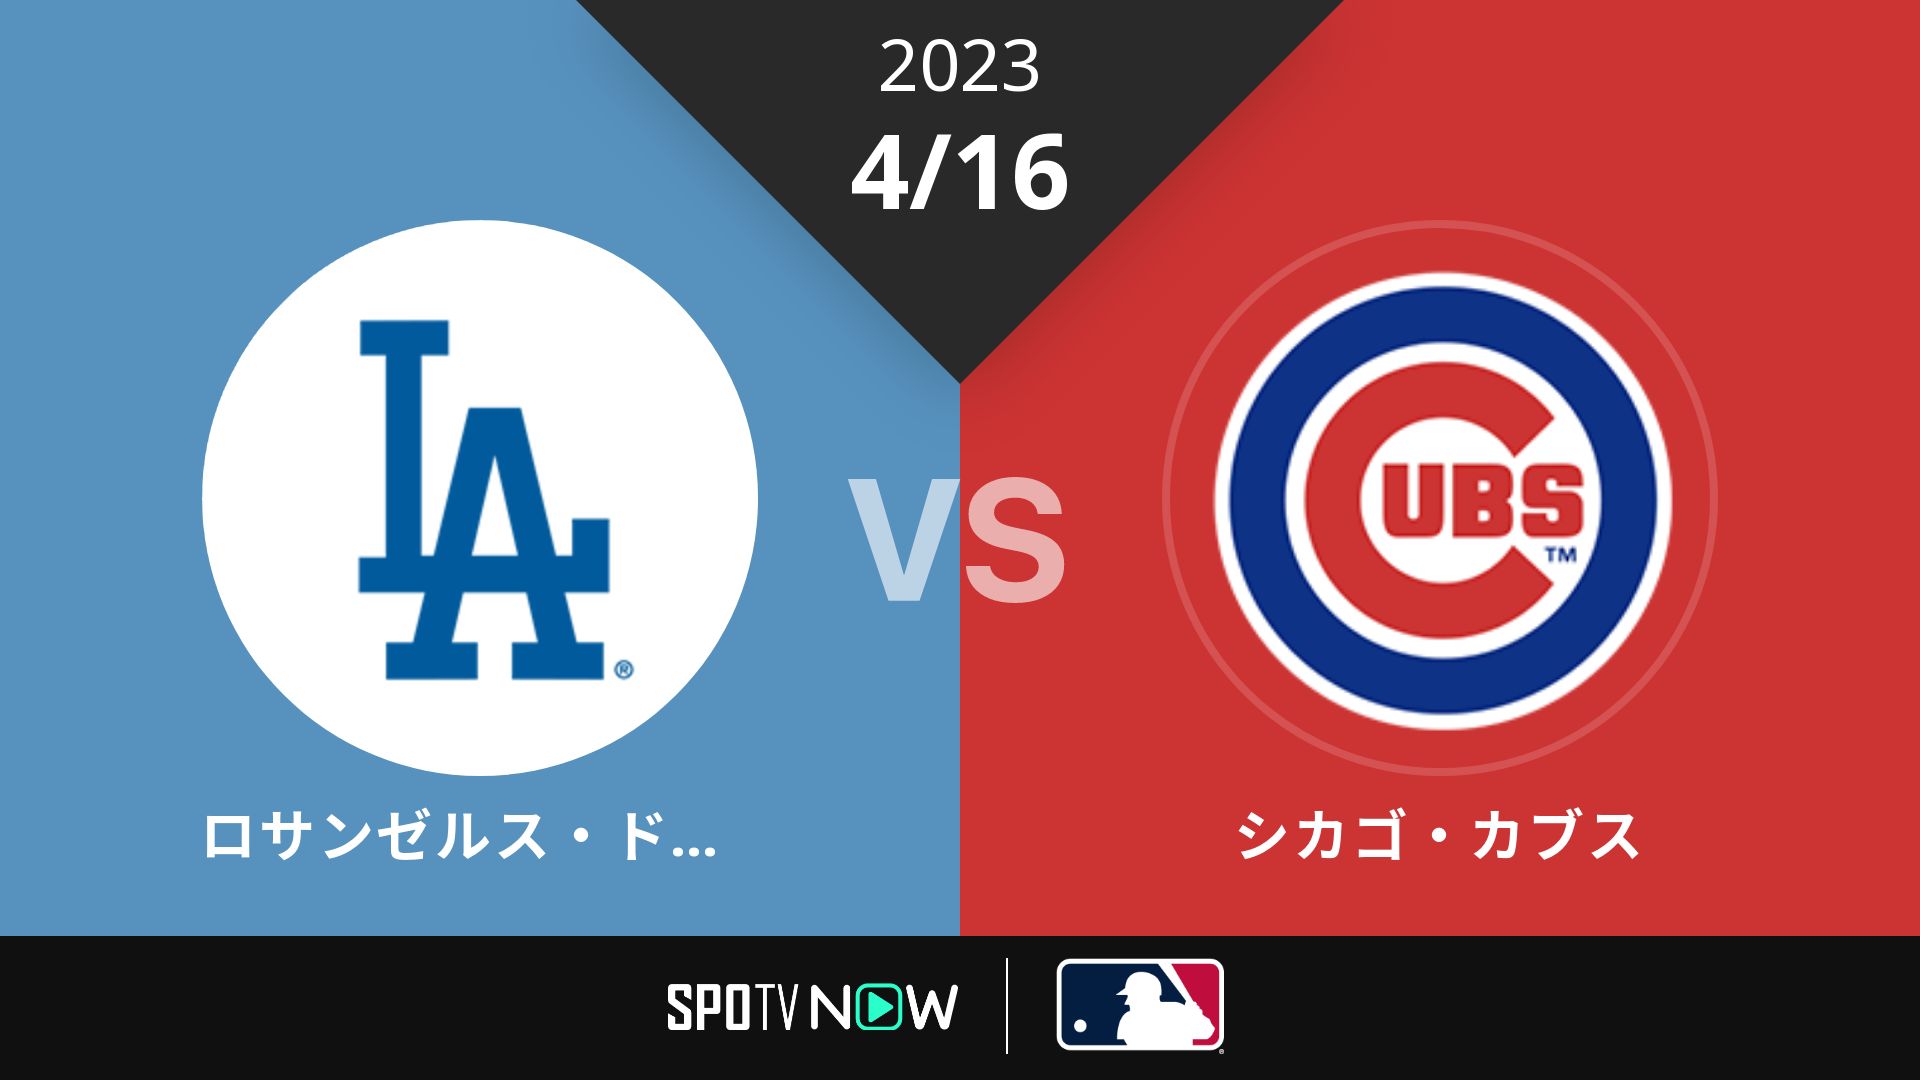 2023/4/16 ドジャース vs カブス [MLB]